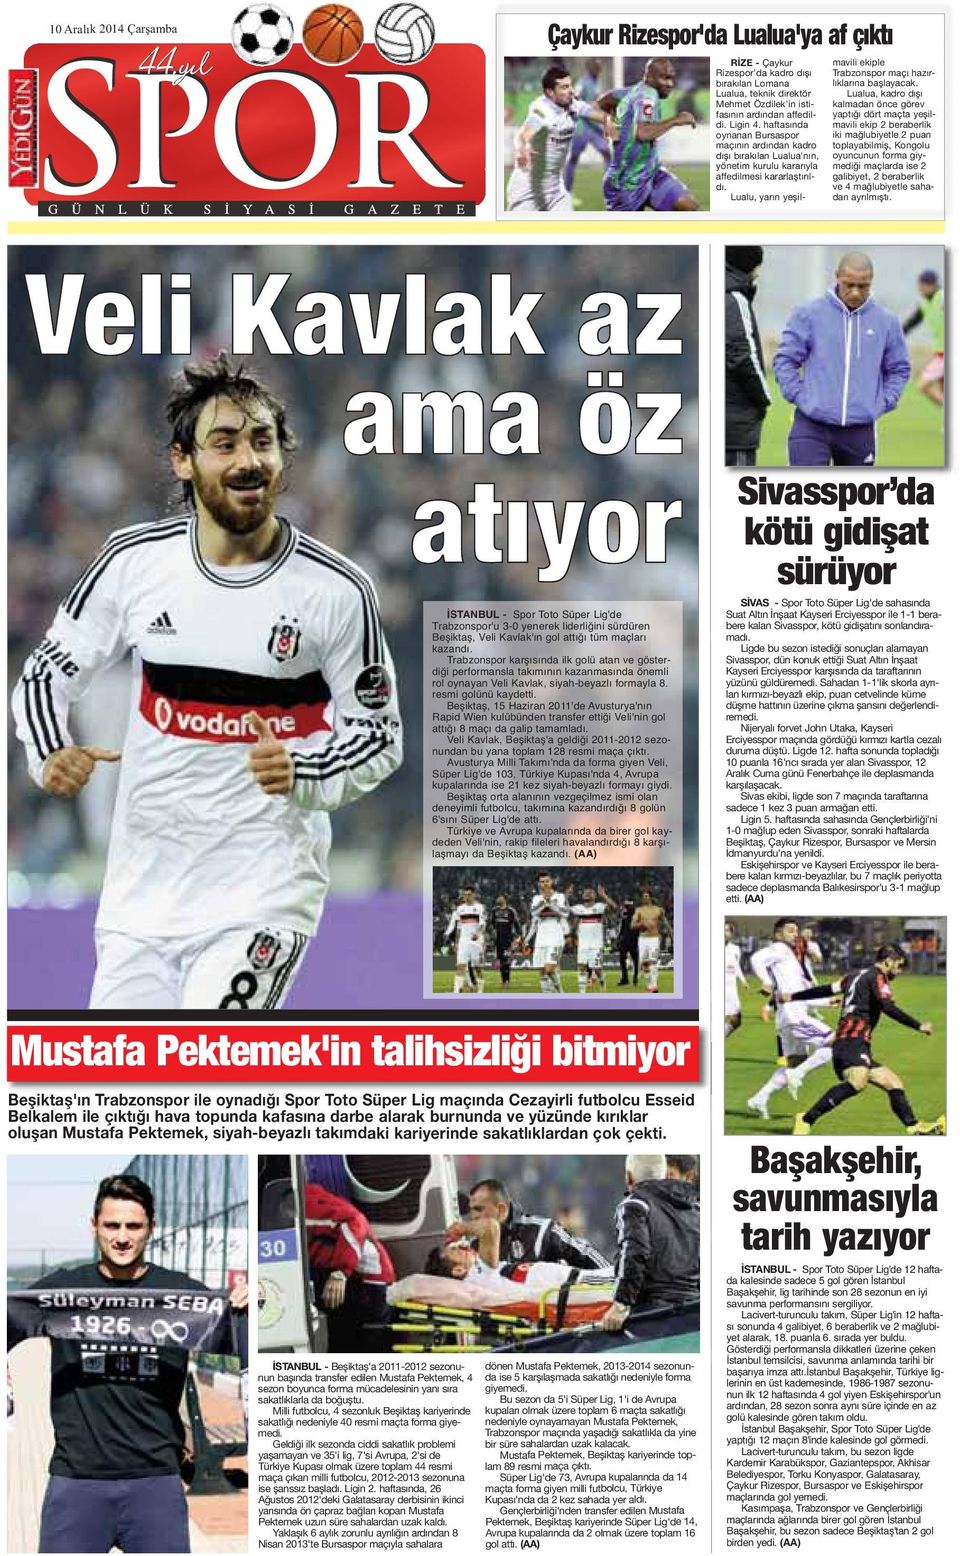 Lualu, yarın yeşilmavili ekiple Trabzonspor maçı hazırlıklarına başlayacak.